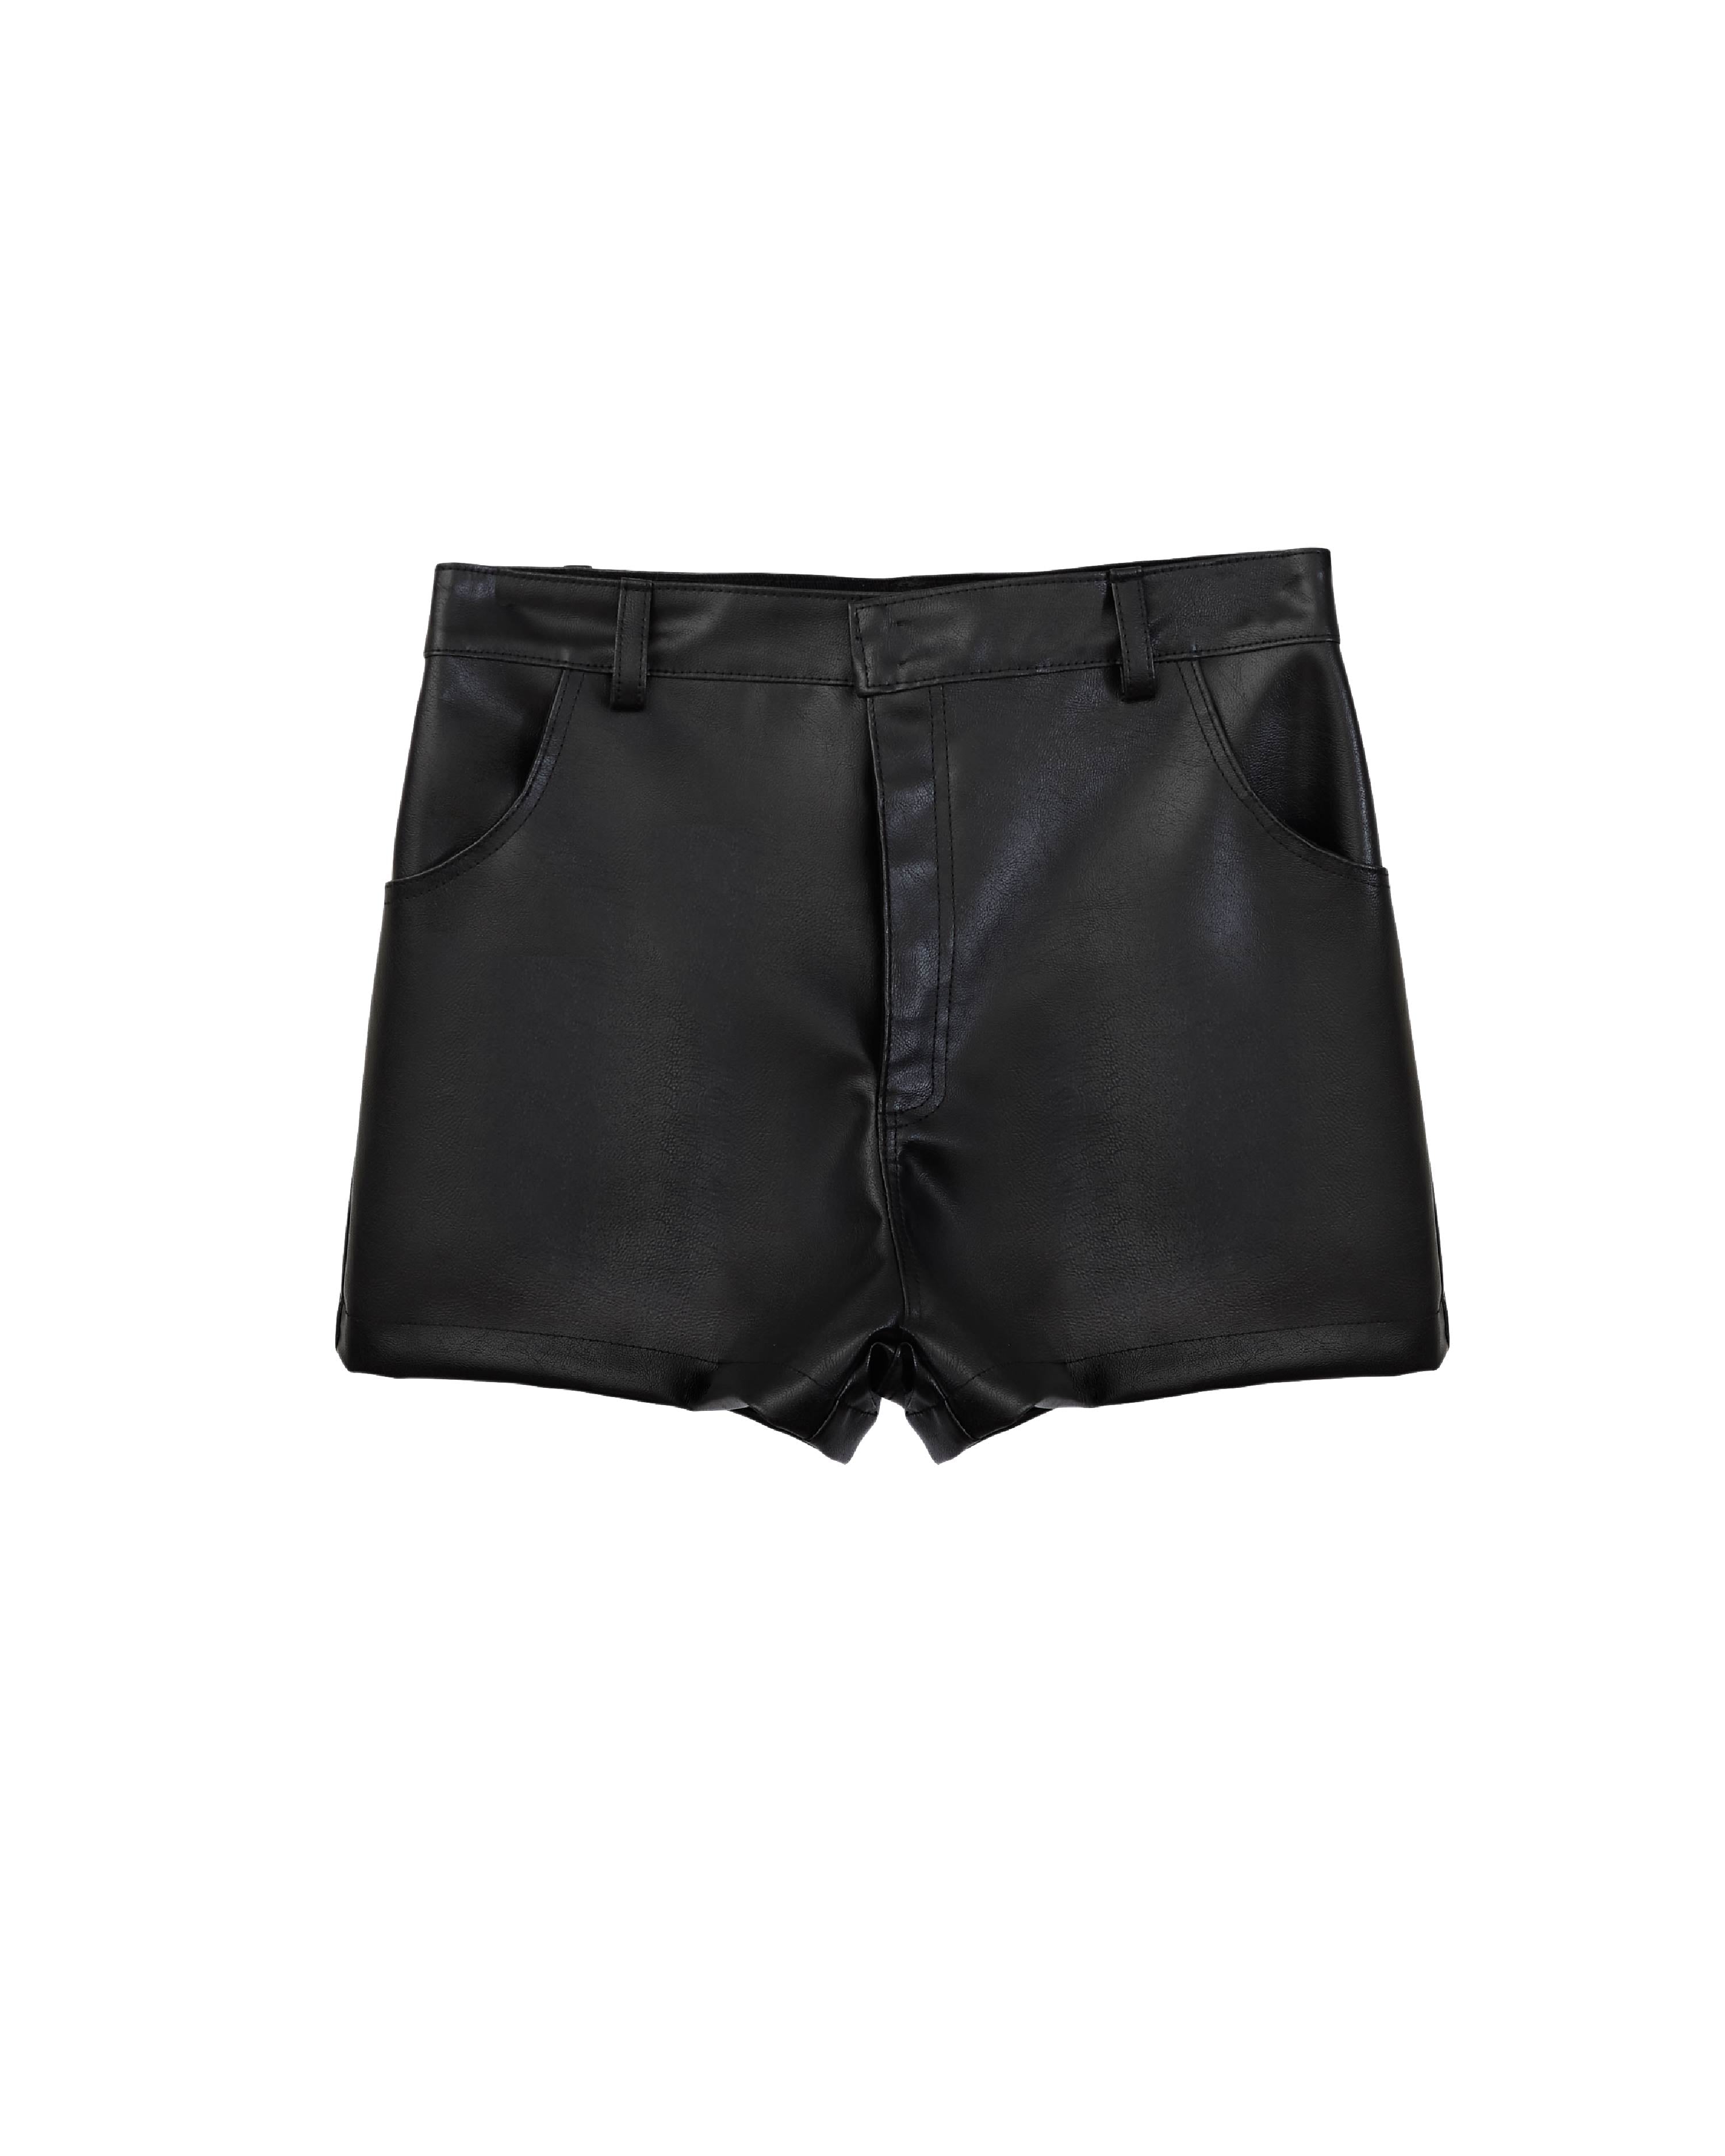 CHOZA micro shorts - VINYLIFE